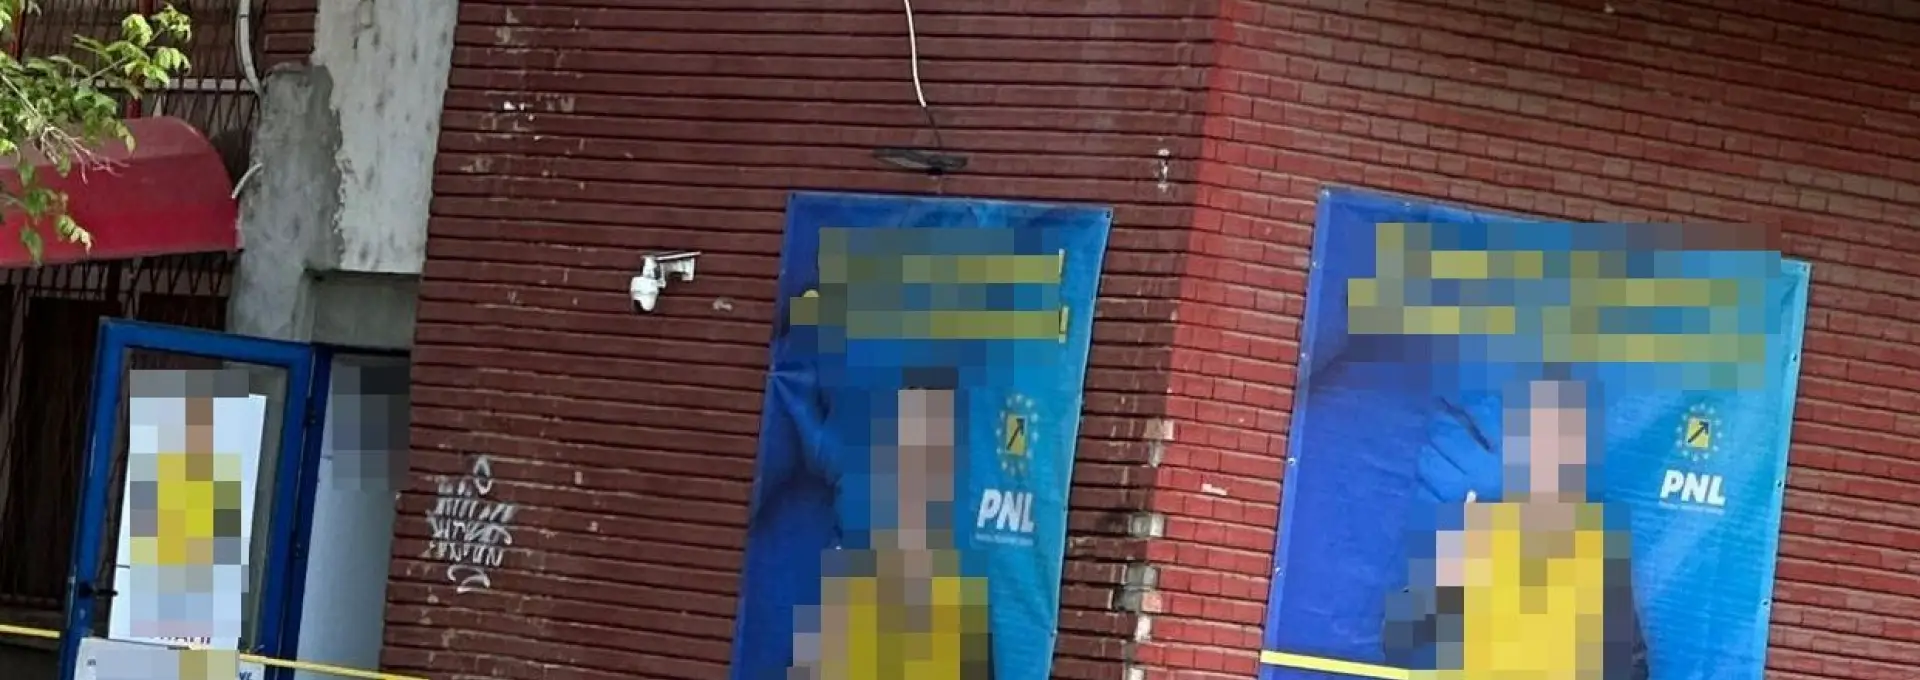 Foto Candidatul PNL la Primaria Slatina încalcă legea electorală. Pus de Biroul Electoral să dea jos de pe sediu bannerele ilegale şi amendat